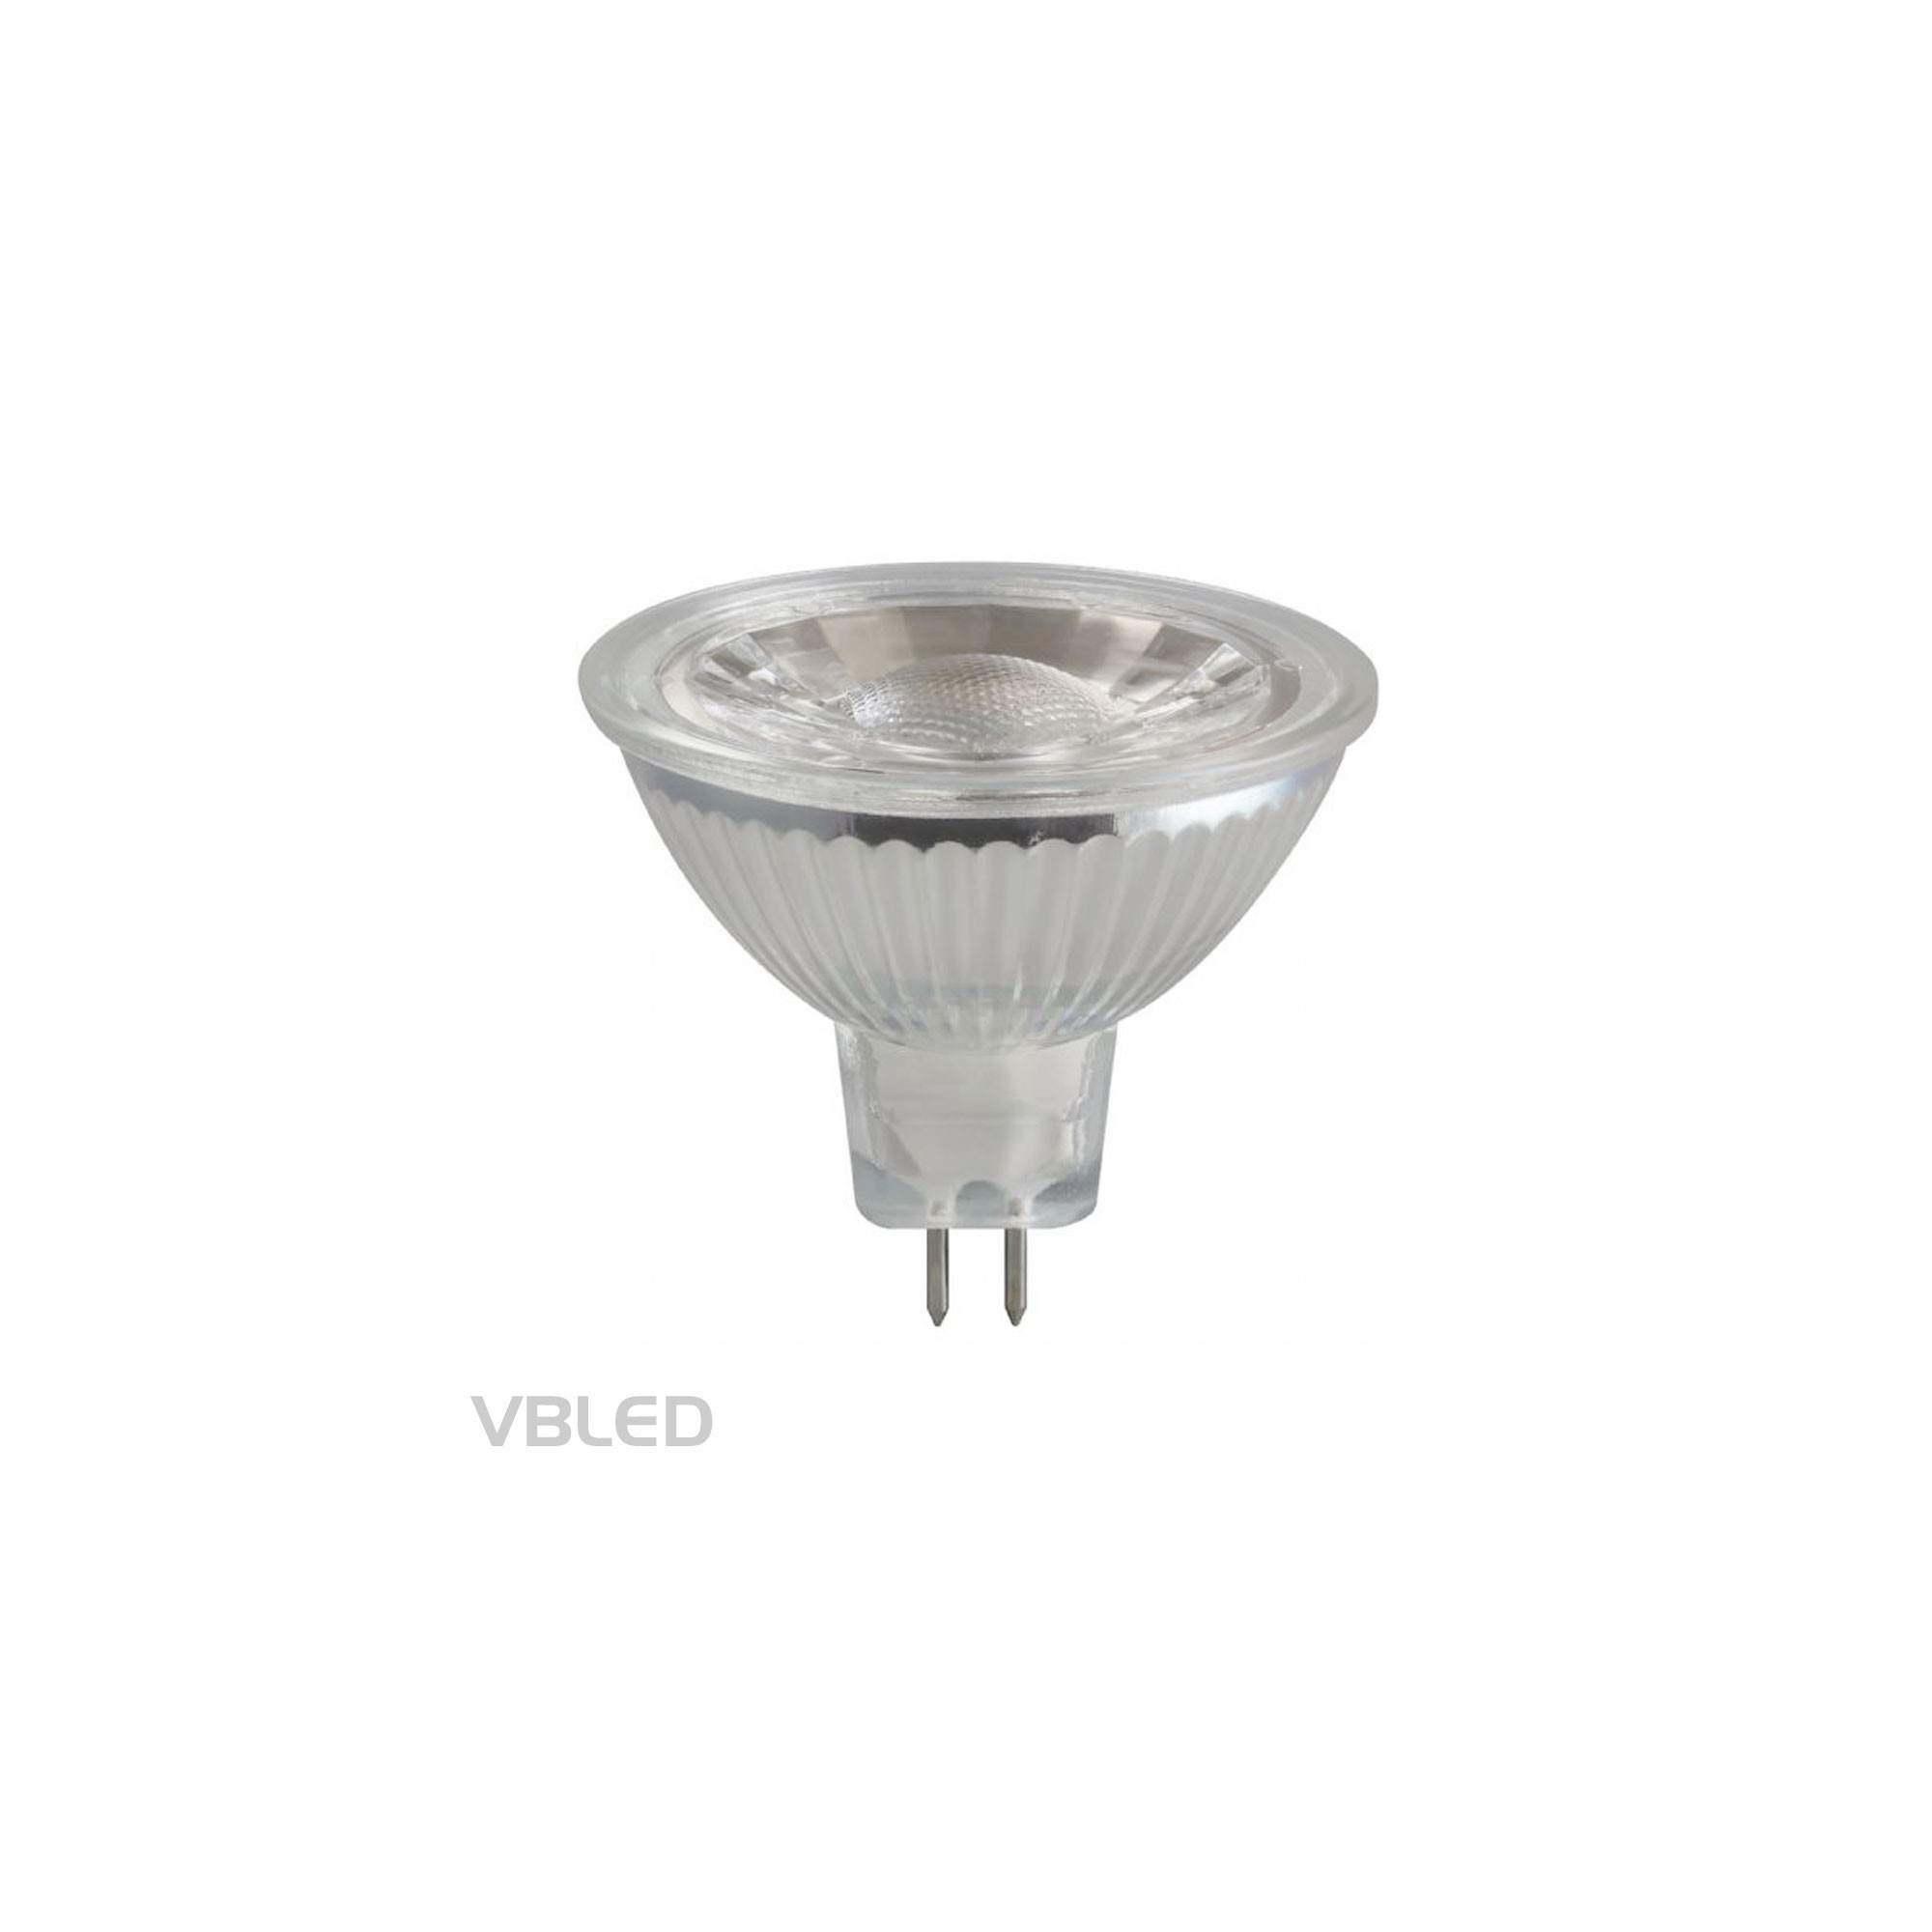 Lampadine LED MR16 GU5.3, 450LM, 5W in sostituzione di lampadine alogene da 50W, bianco caldo (2900K), dimmerabili, 12V AC/D